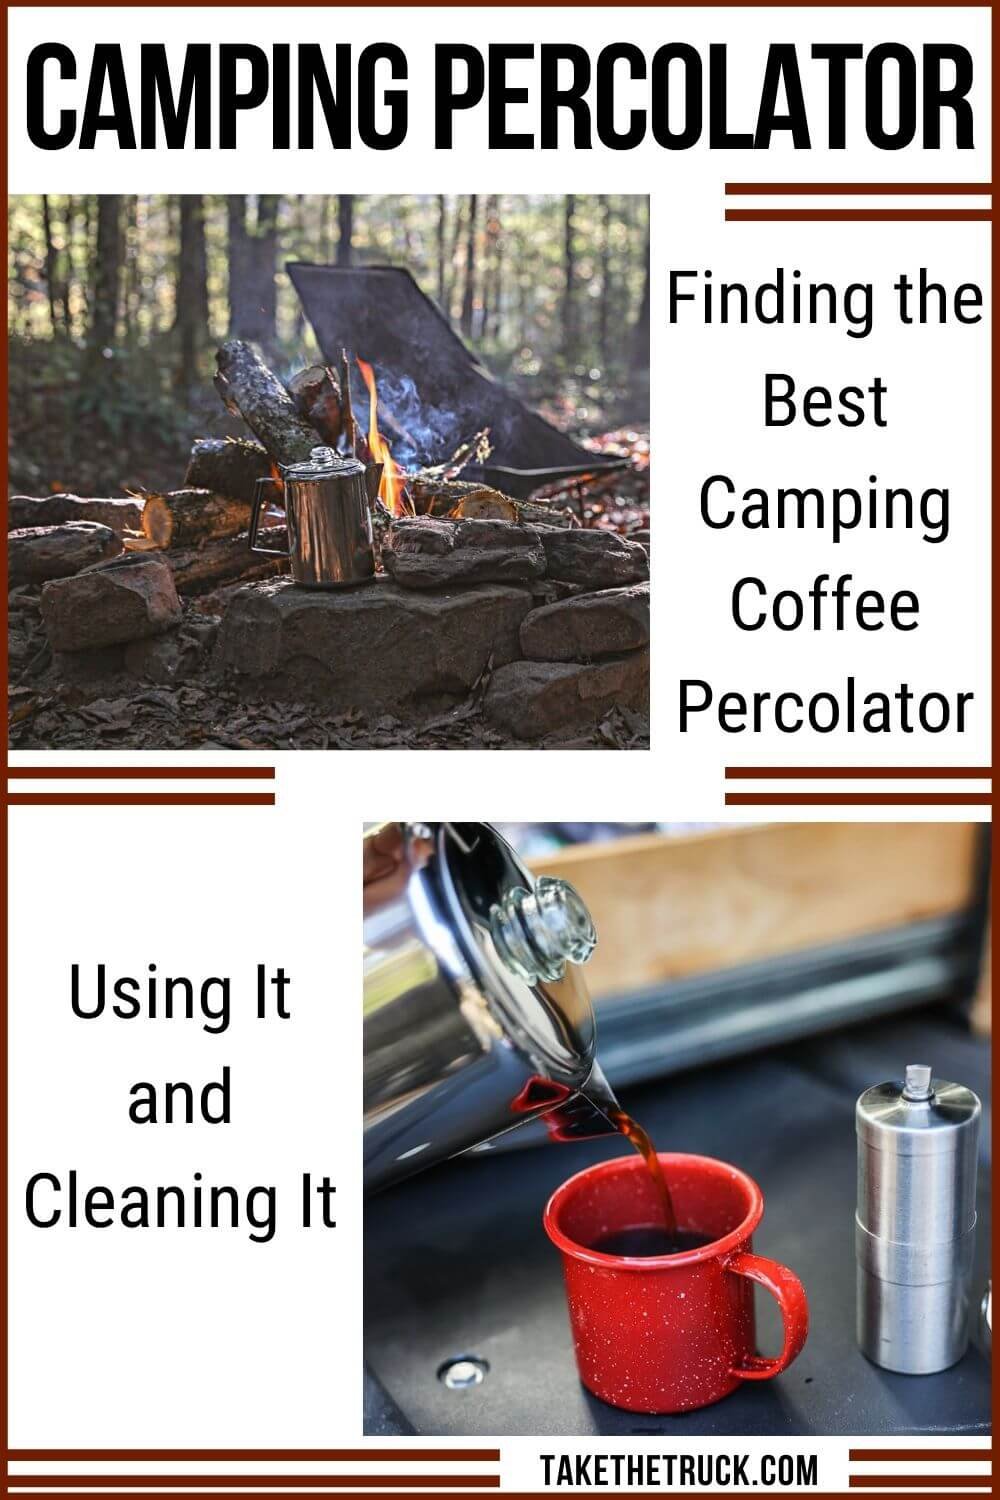 https://images.squarespace-cdn.com/content/v1/5bbd67d490f9042649da280e/1636984903091-9R626DZP7O4EJOAS4K81/camping-percolator-how-to-use-a-percolator-camping.jpg